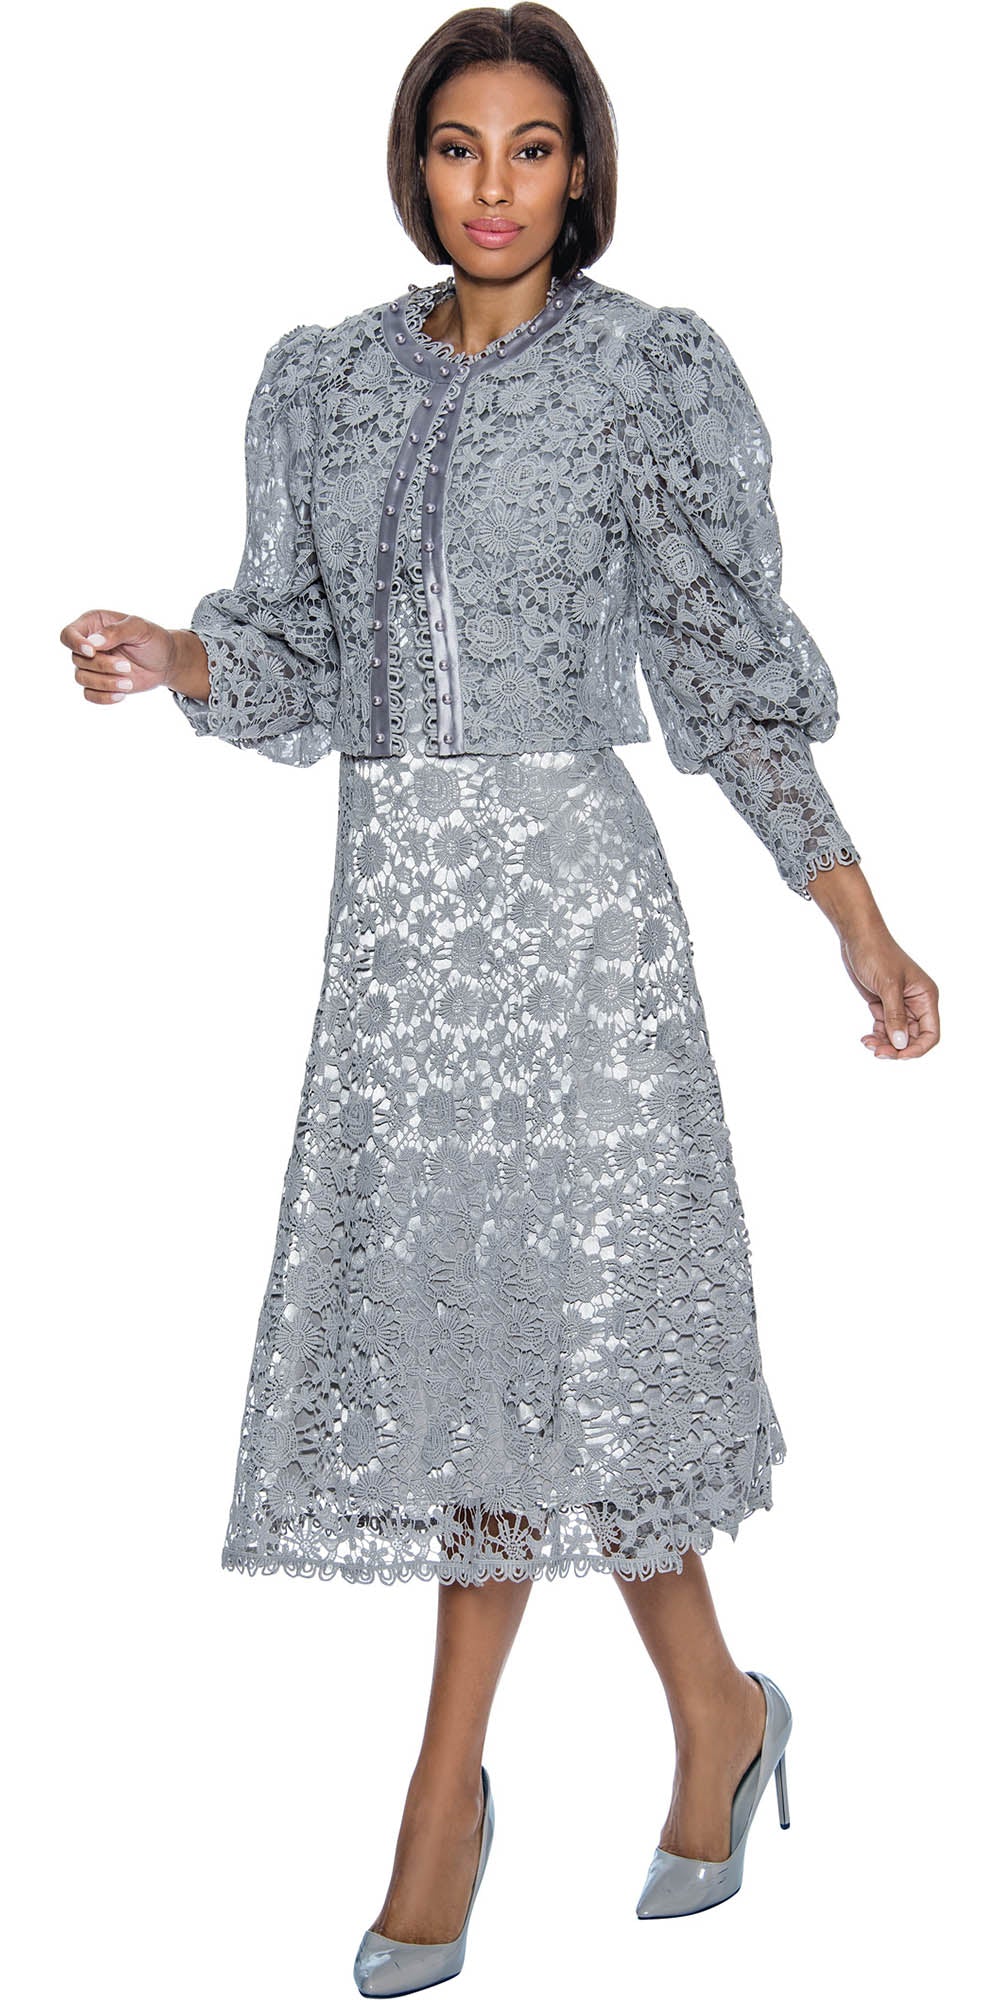 Terramina 7051 - Silver - 2 PC Lace Jacket Dress